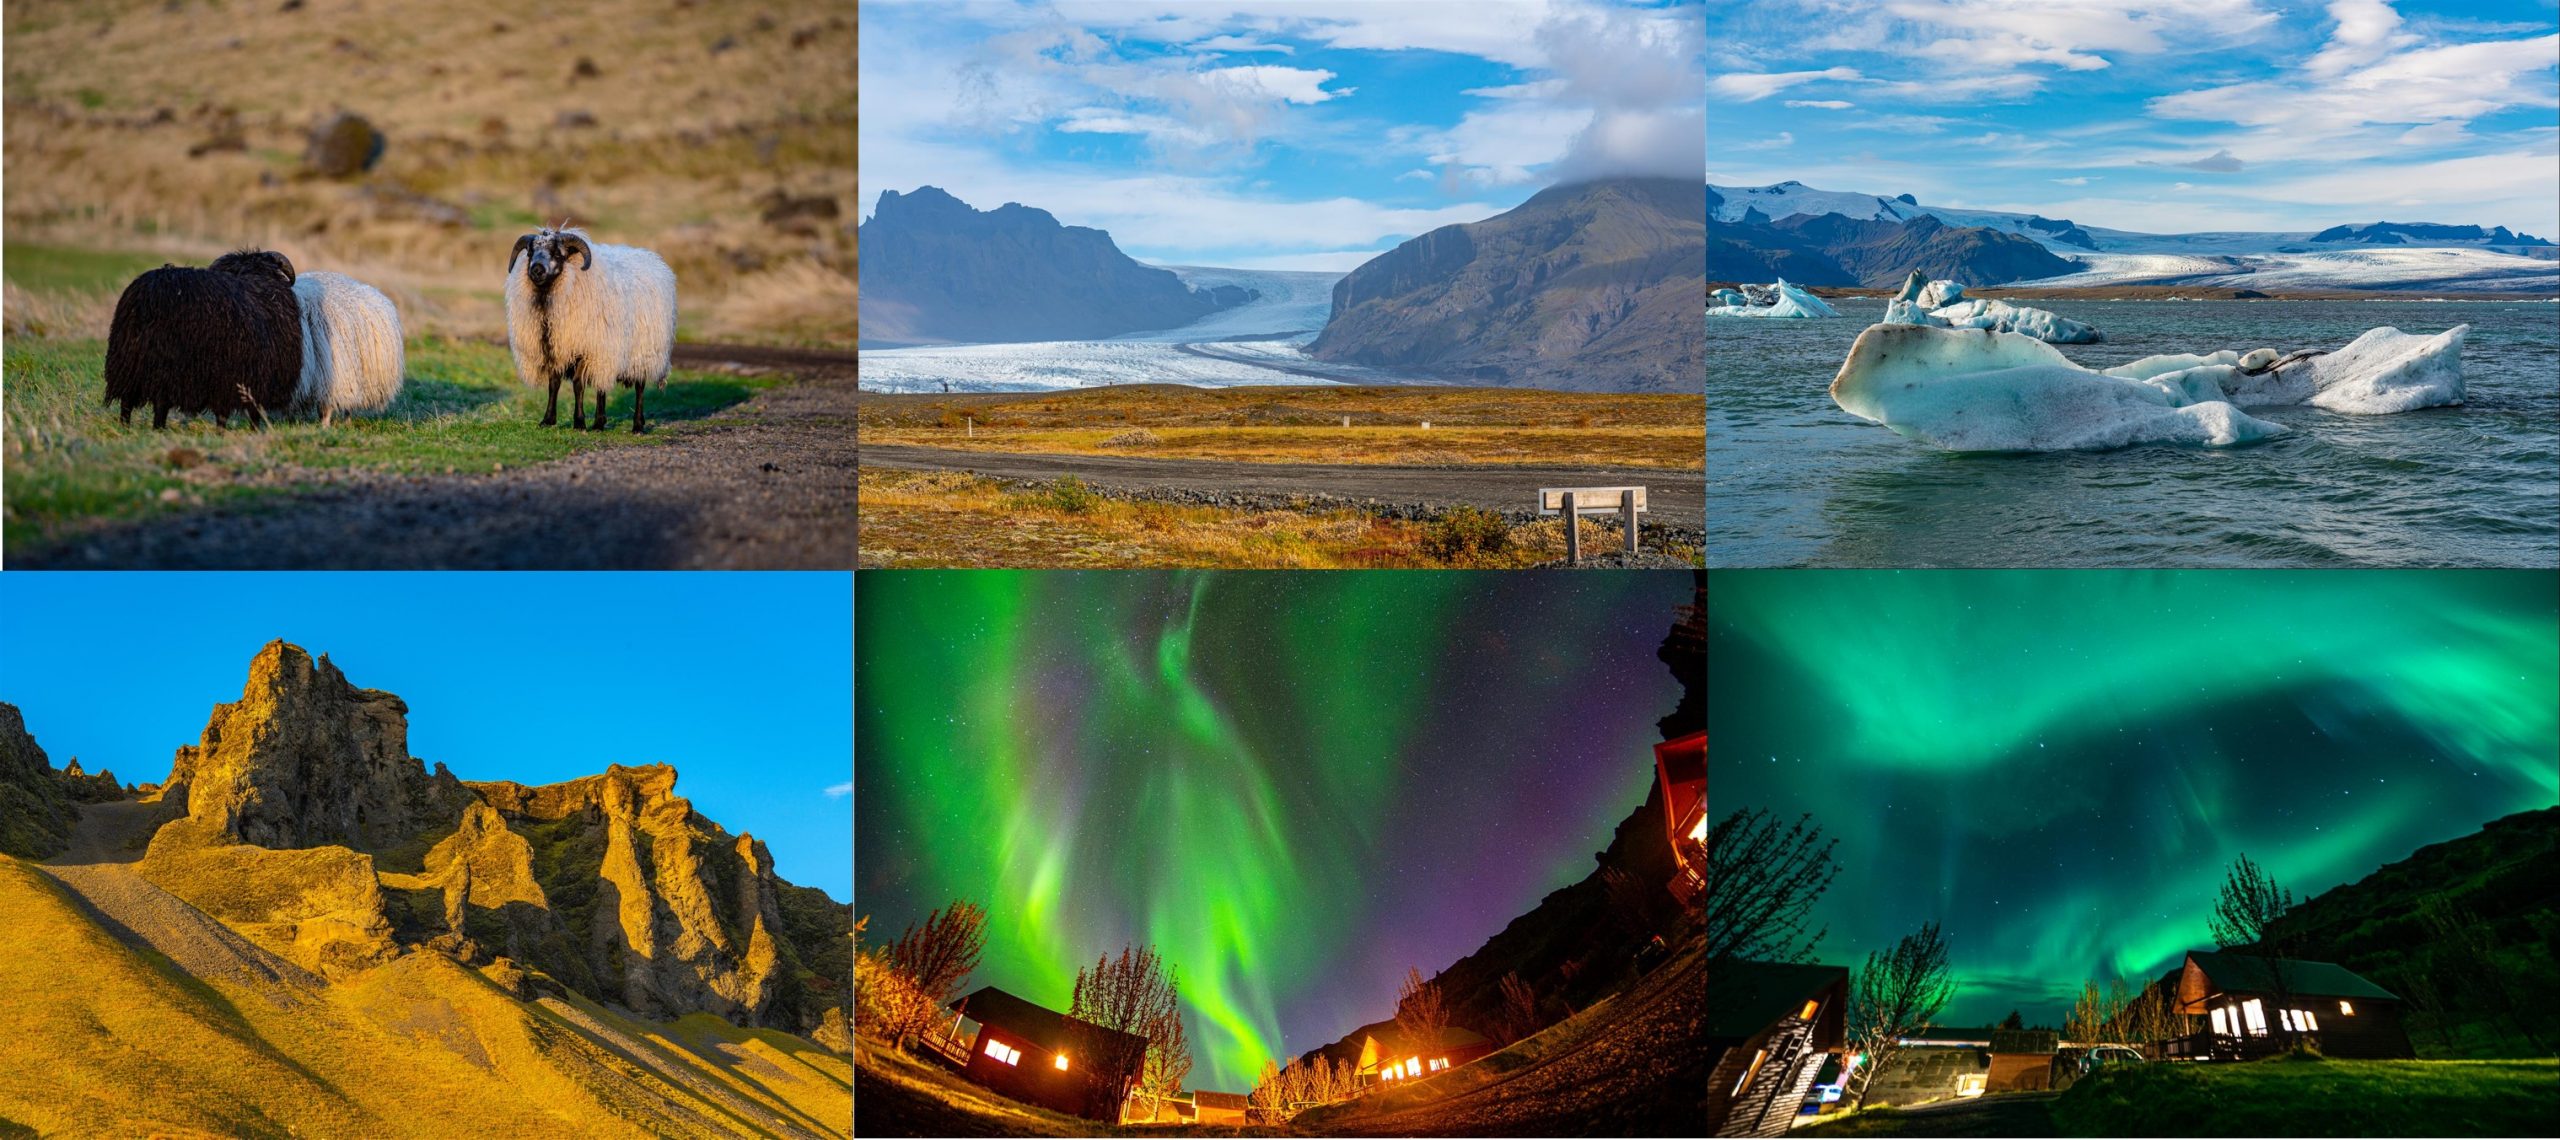 [冰島] 2019 冰島極光自助旅行 - 10 天行程整理、路線、景點參考